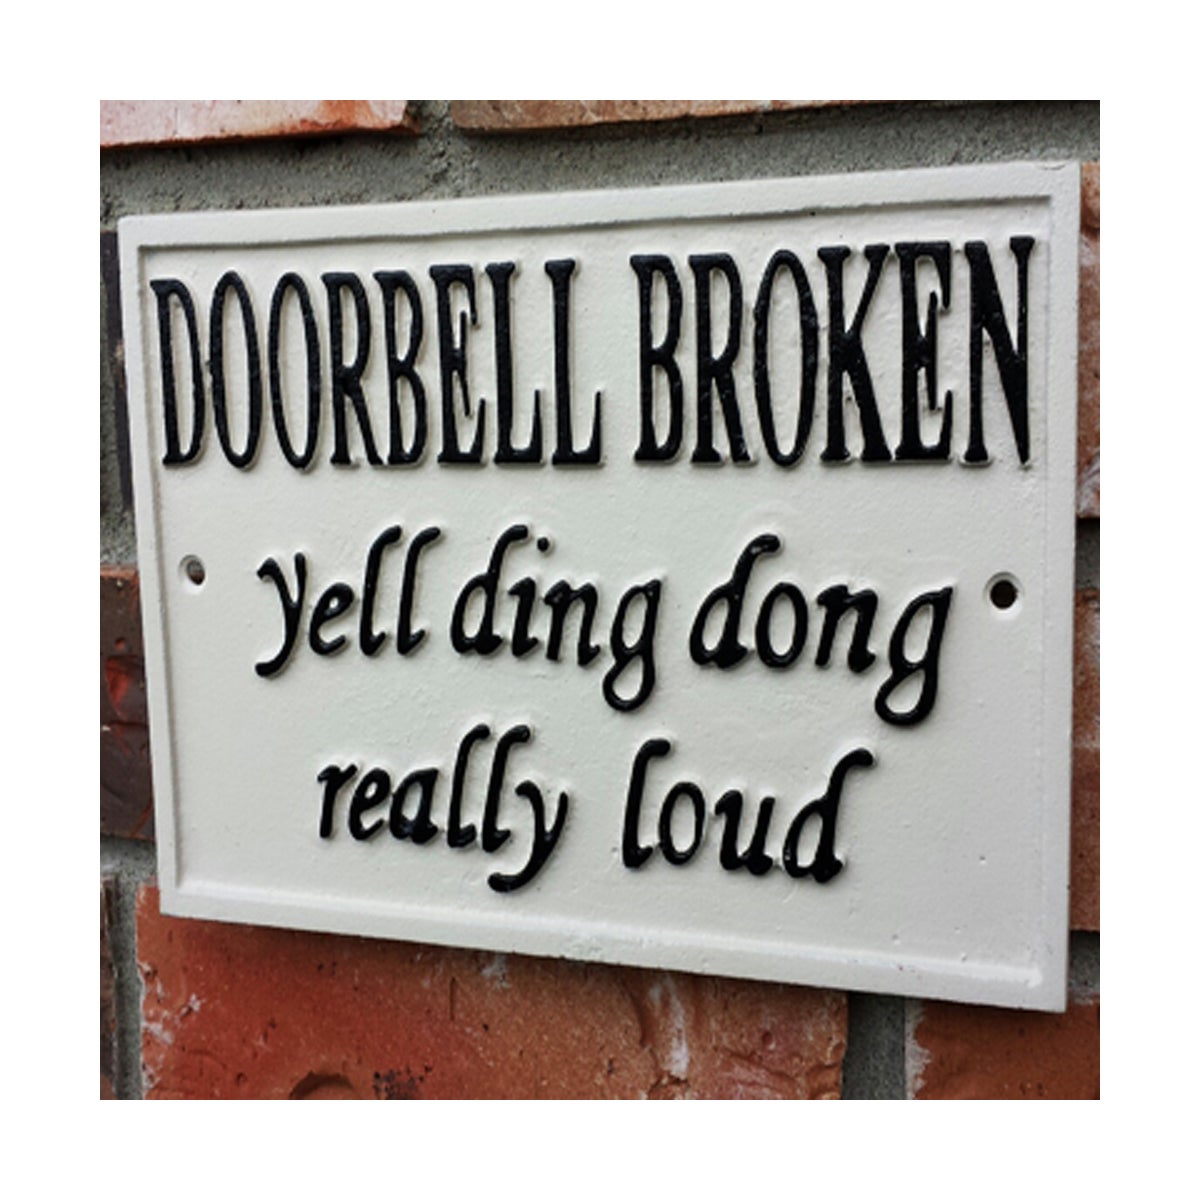 Cast Iron Doorbell Broken Sign